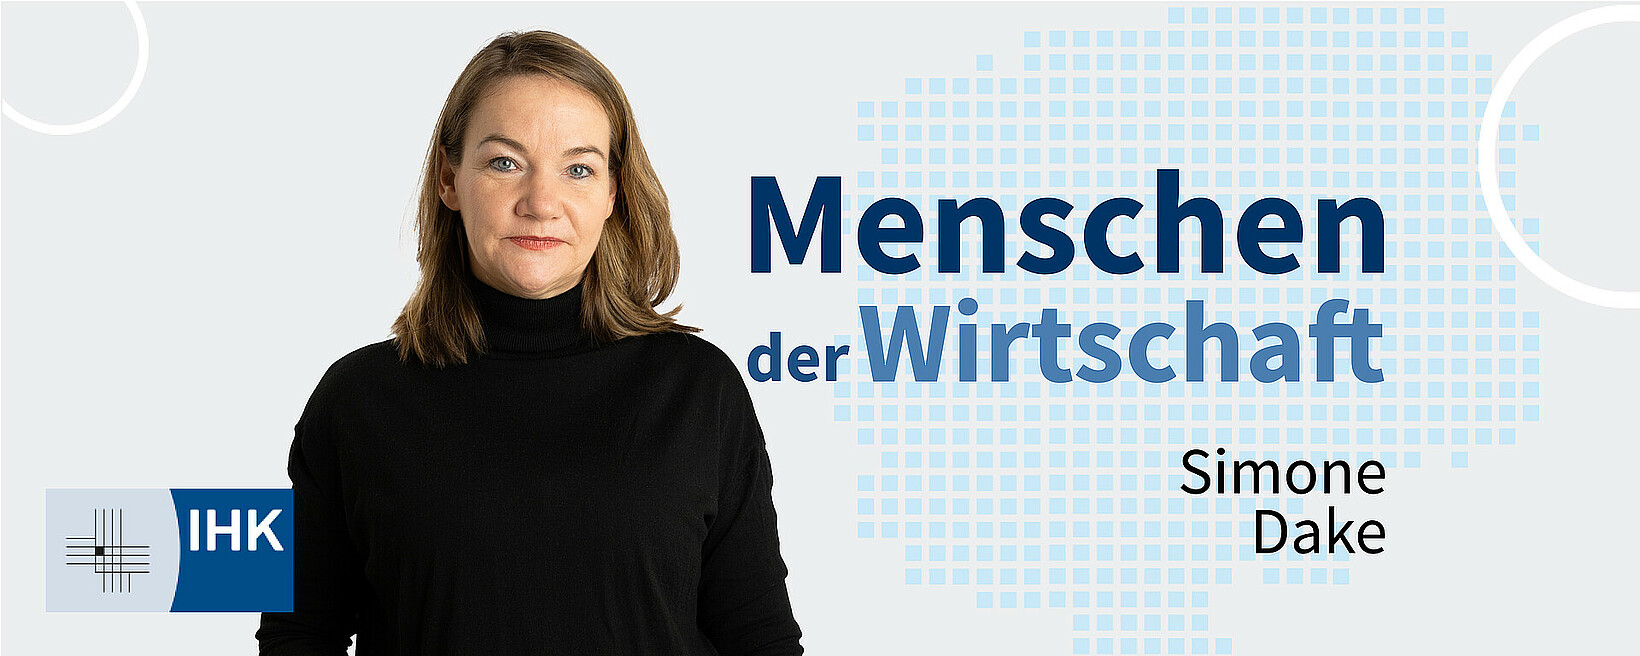 MENSCHEN DER WIRTSCHAFT | Simone Dake